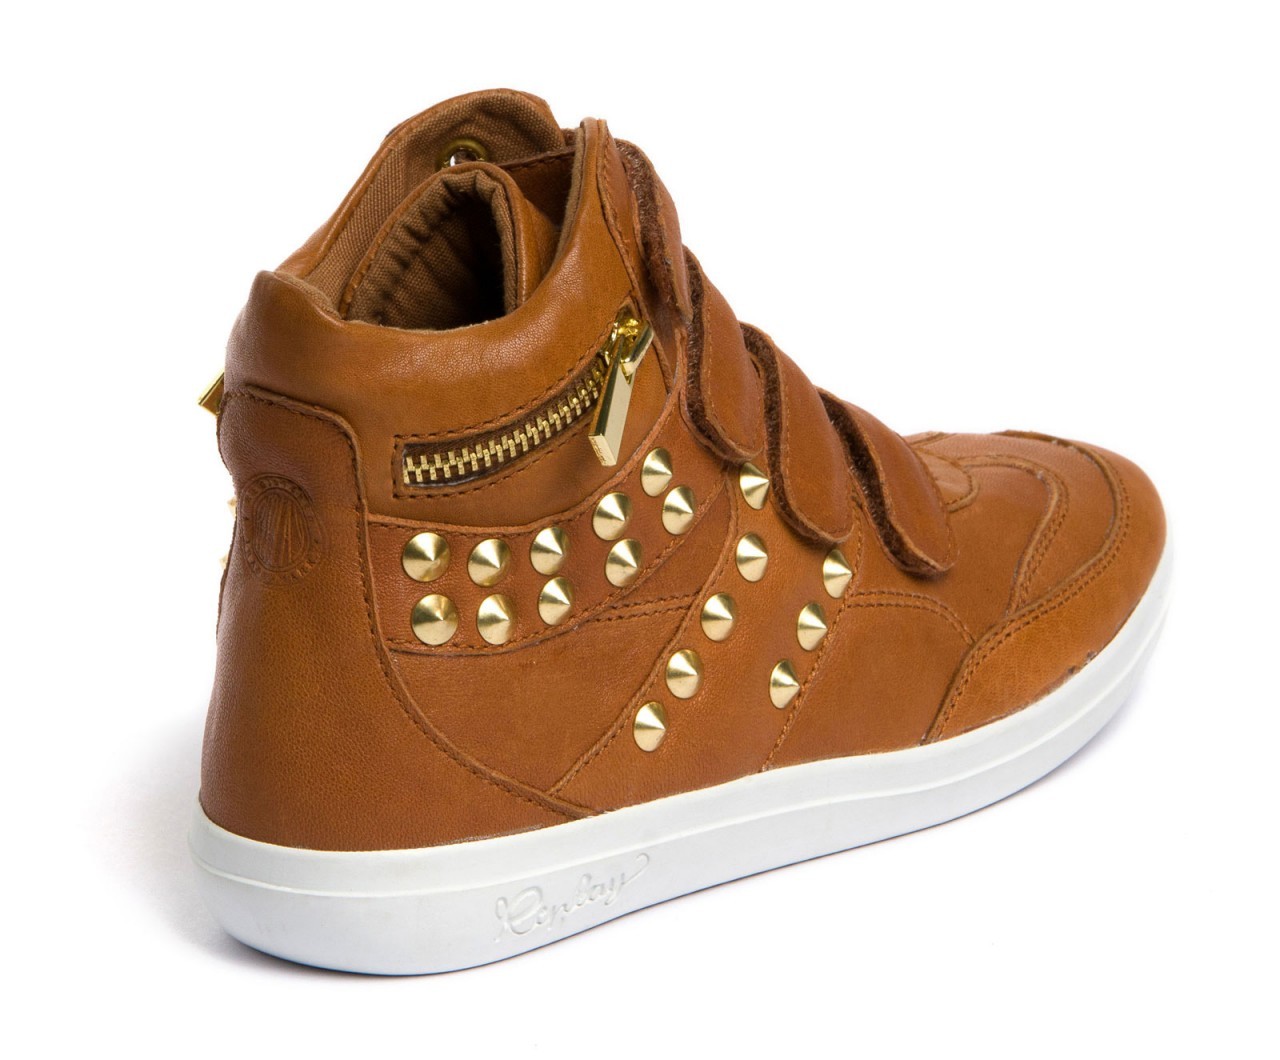 Replay barna sneaker arany szegecsekkel 2013.4.12 fotója